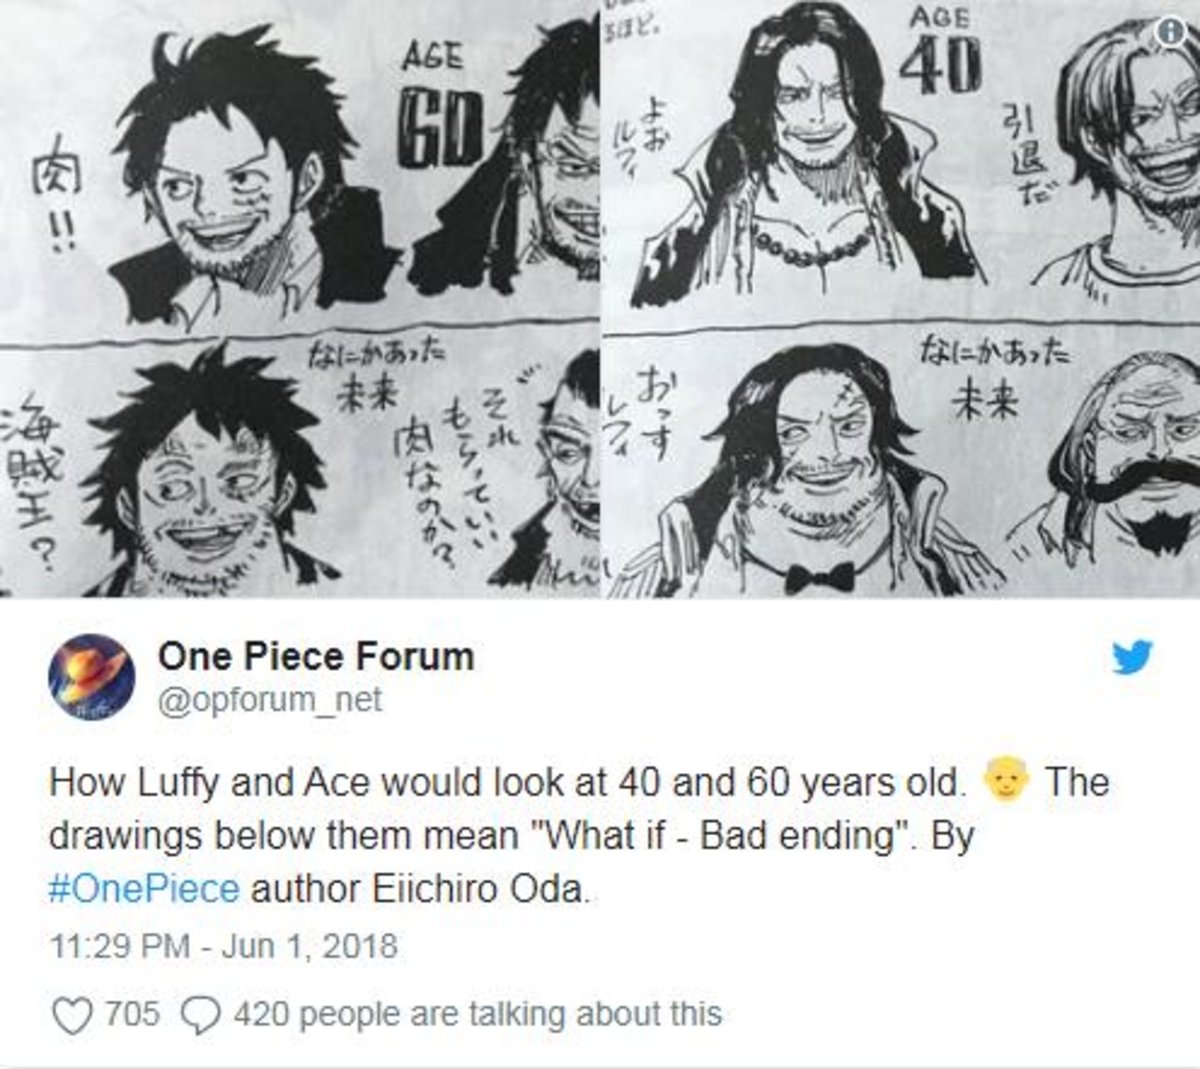 One Piece: El creador Eiichiro Oda dibuja a Luffy de viejo y revoluciona a los seguidores